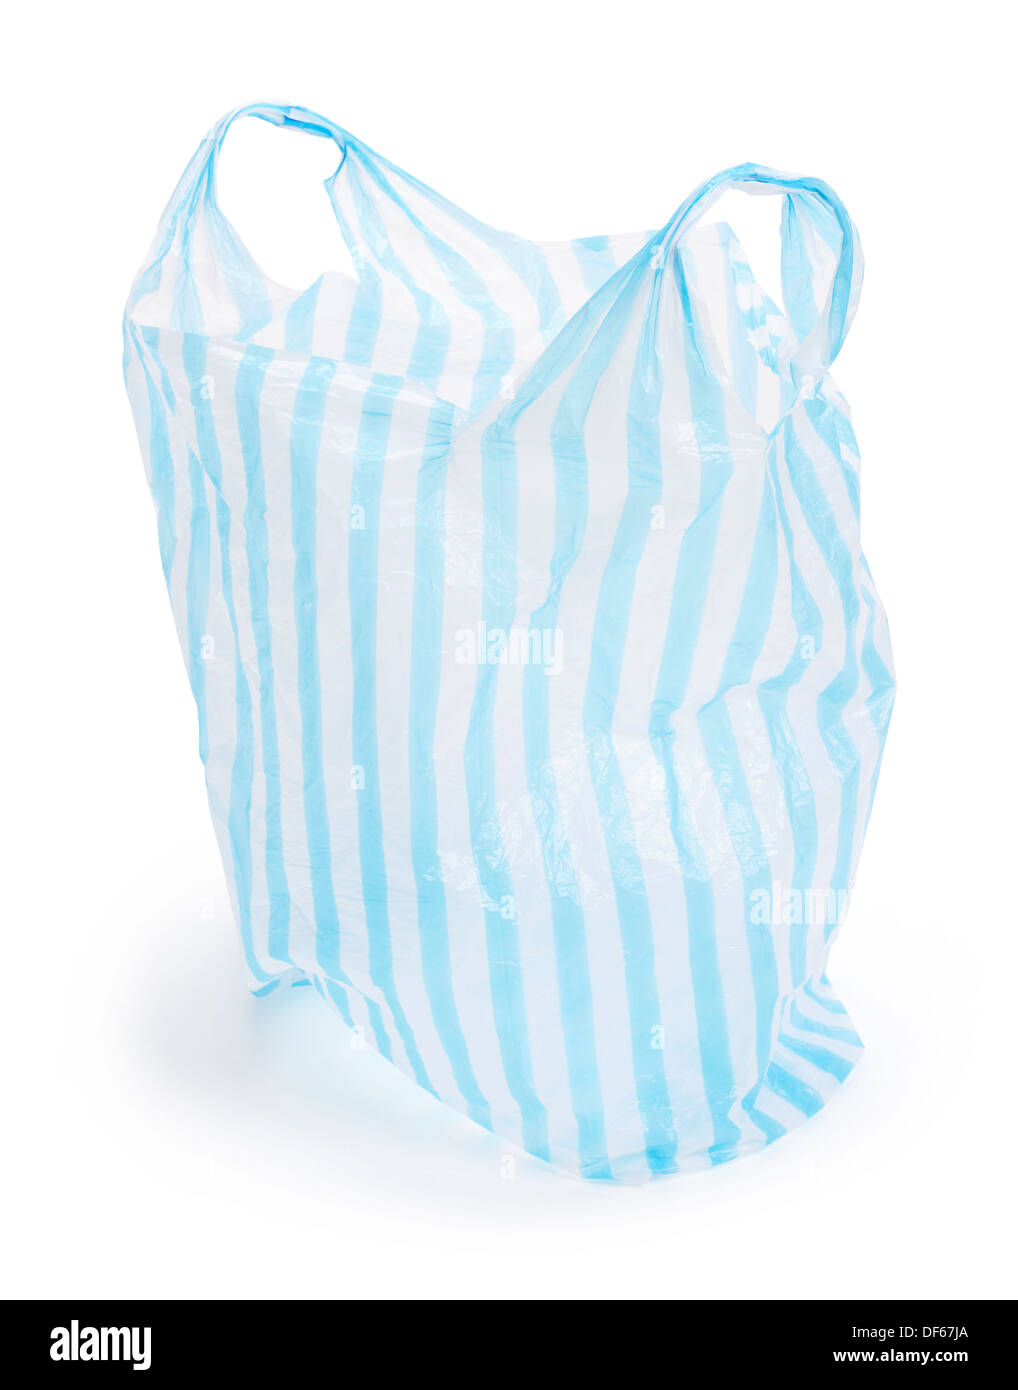 Plastique rayé bleu et blanc sac boutique Banque D'Images